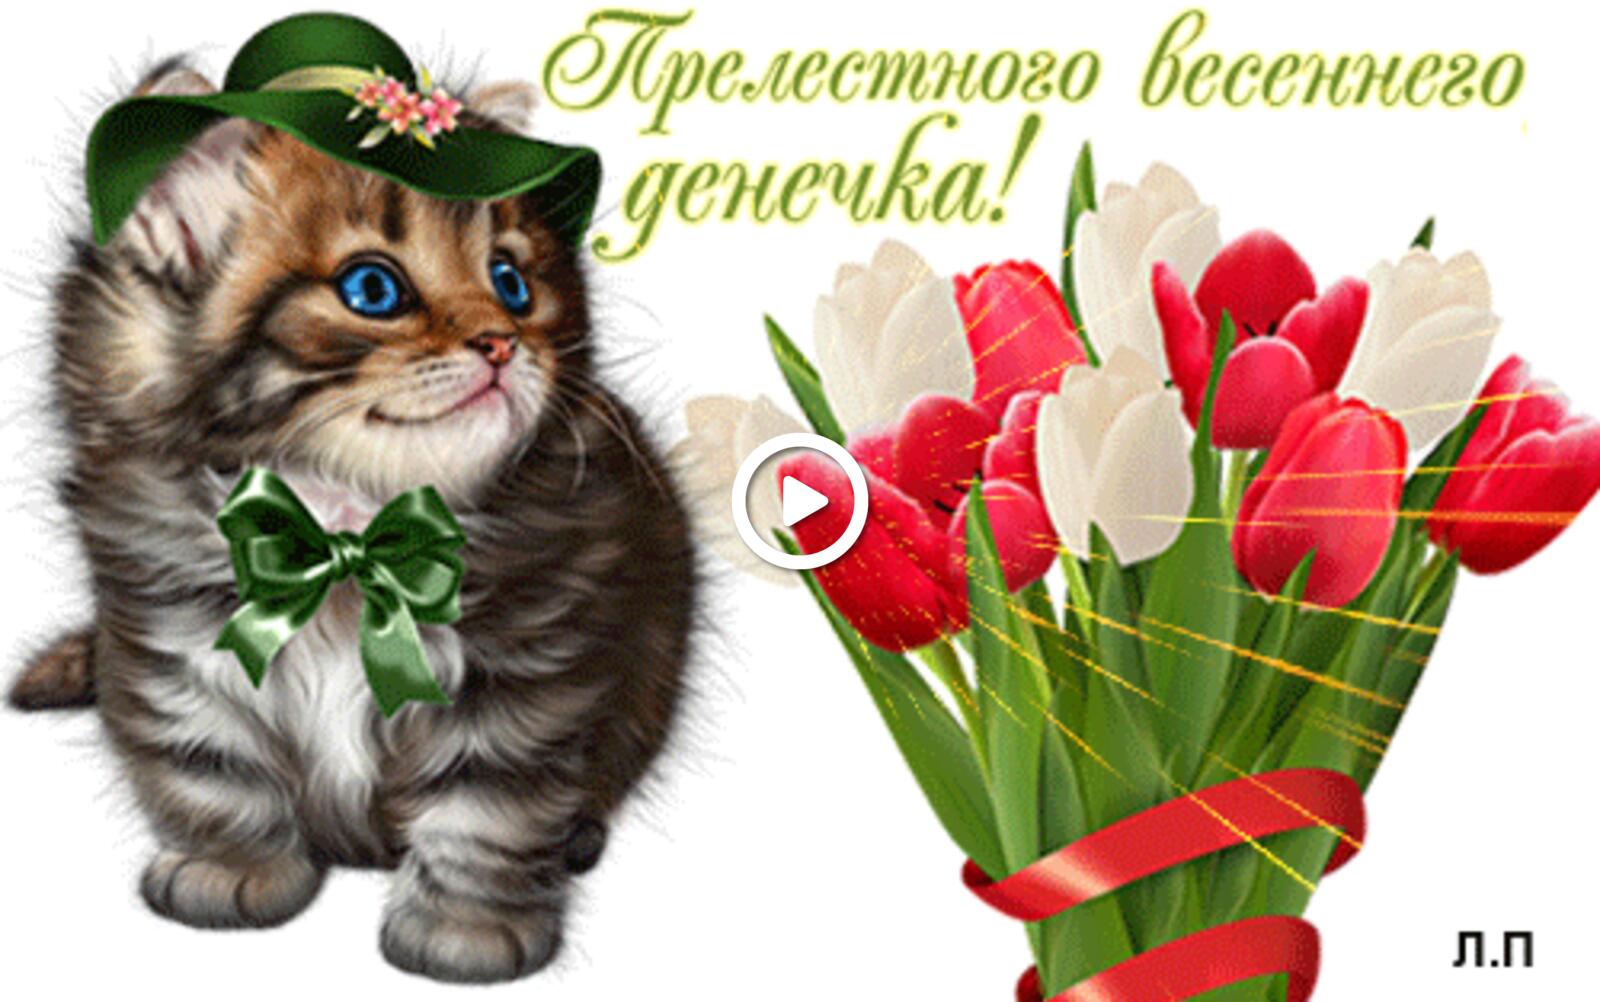 一张以喜欢 春季贺卡动画 小猫为主题的明信片